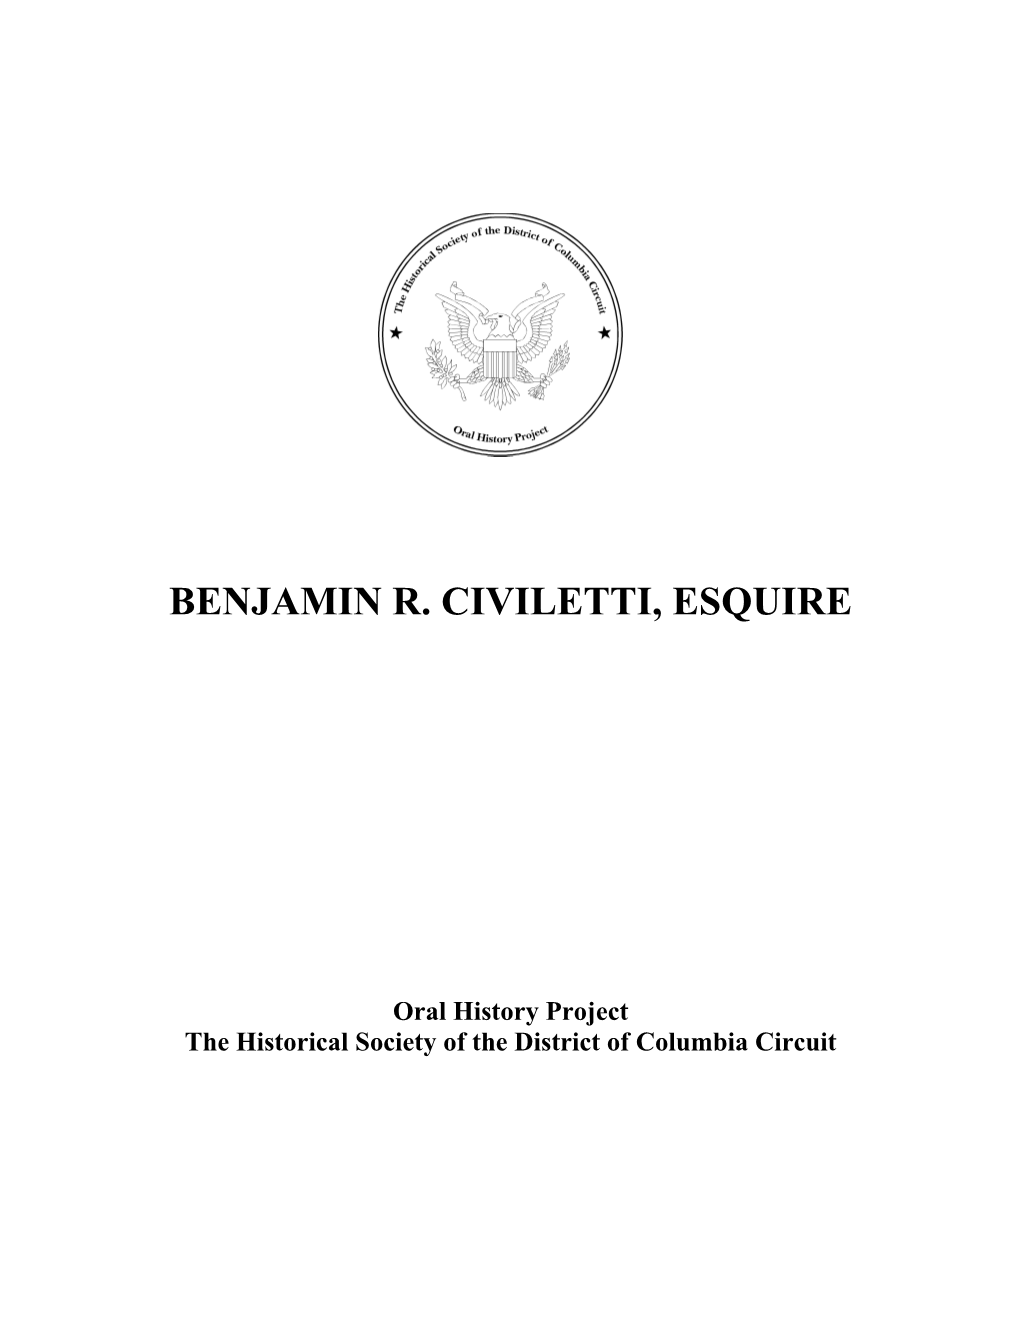 Benjamin R. Civiletti, Esquire